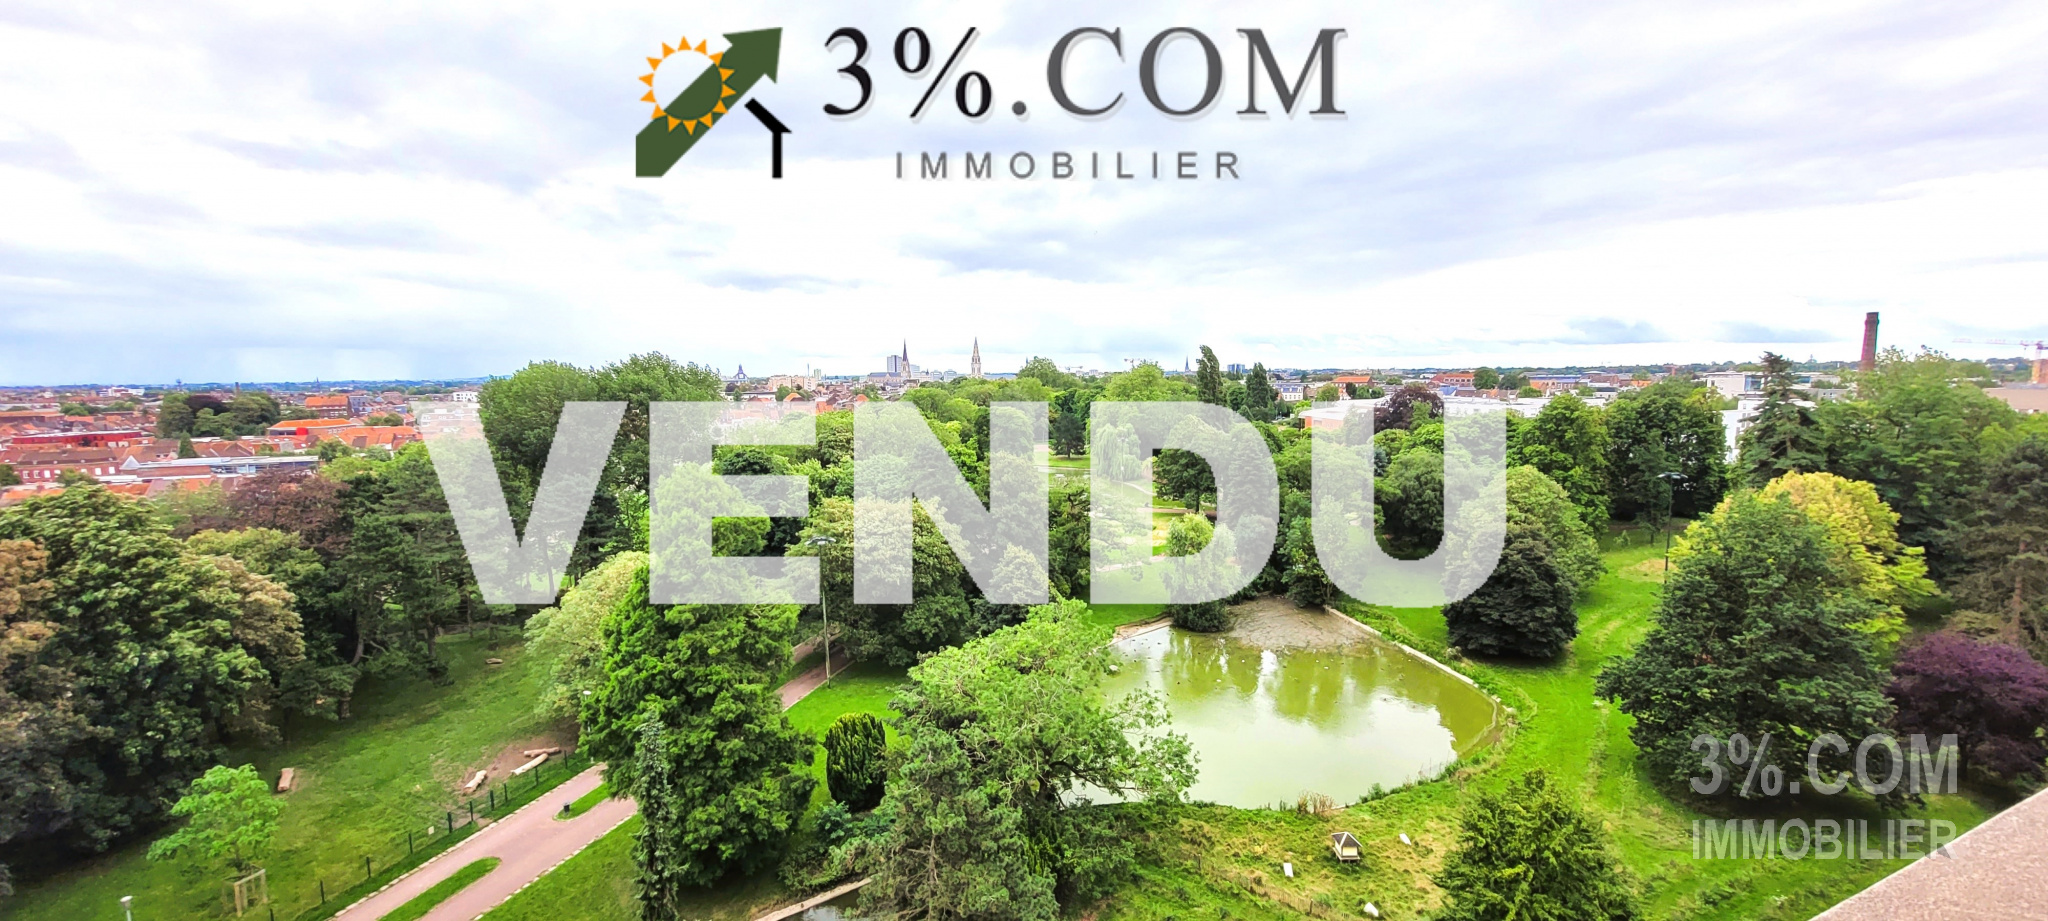 Vente Appartement 47m² 2 Pièces à Tourcoing (59200) - 3%.Com